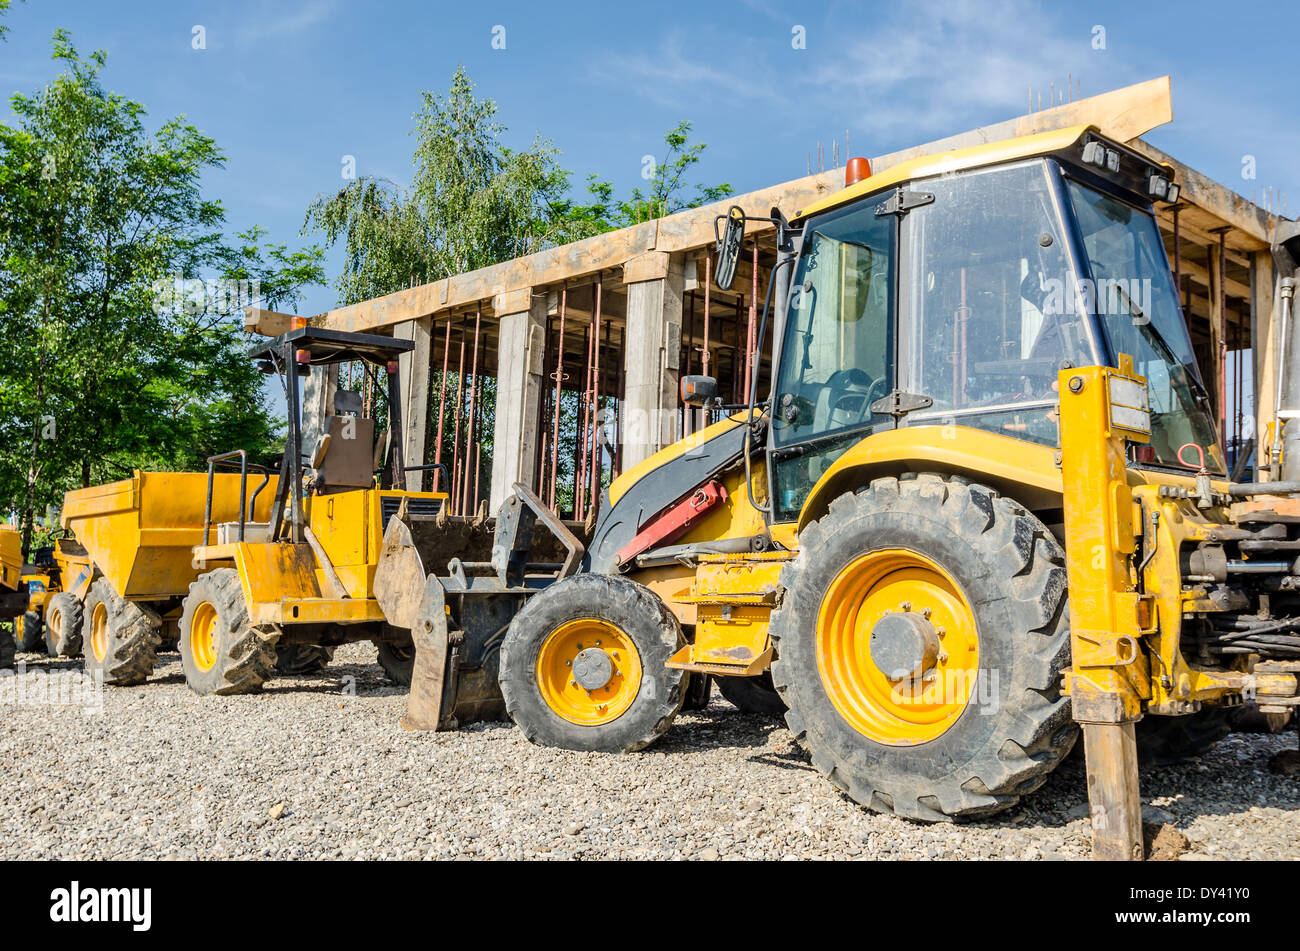 Pelle chargeuse construction machinery matériel , bulldozer en attente pour commencer le travail dans un site de construction Banque D'Images